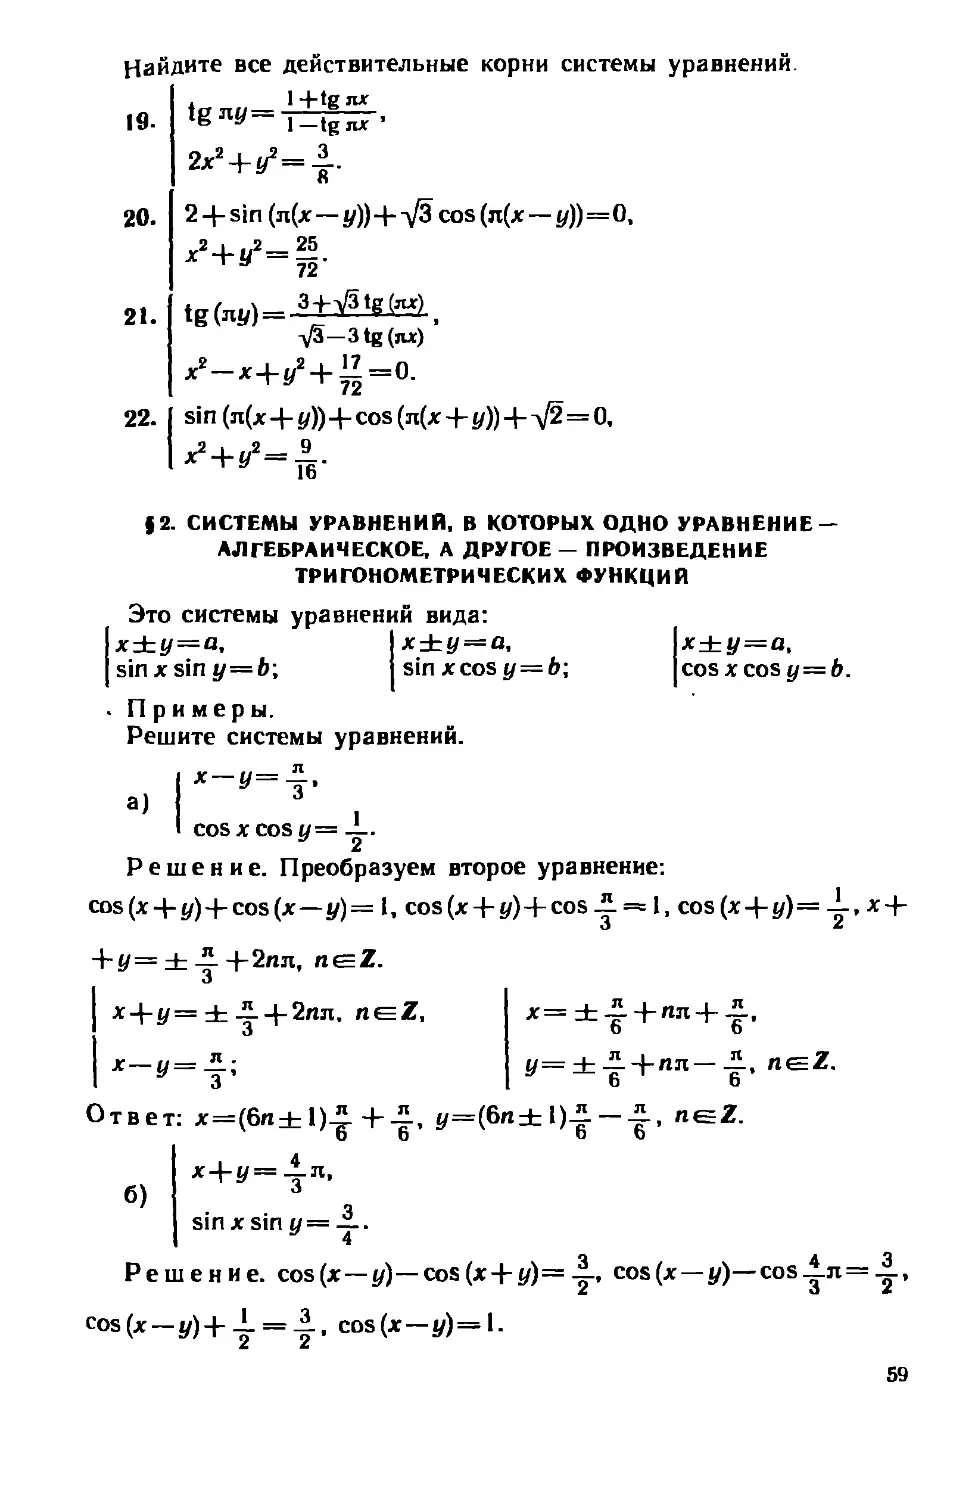 § 2. Системы уравнений, в которых одно уравнение — алгебраическое, а другое — произведение тригонометрических функций